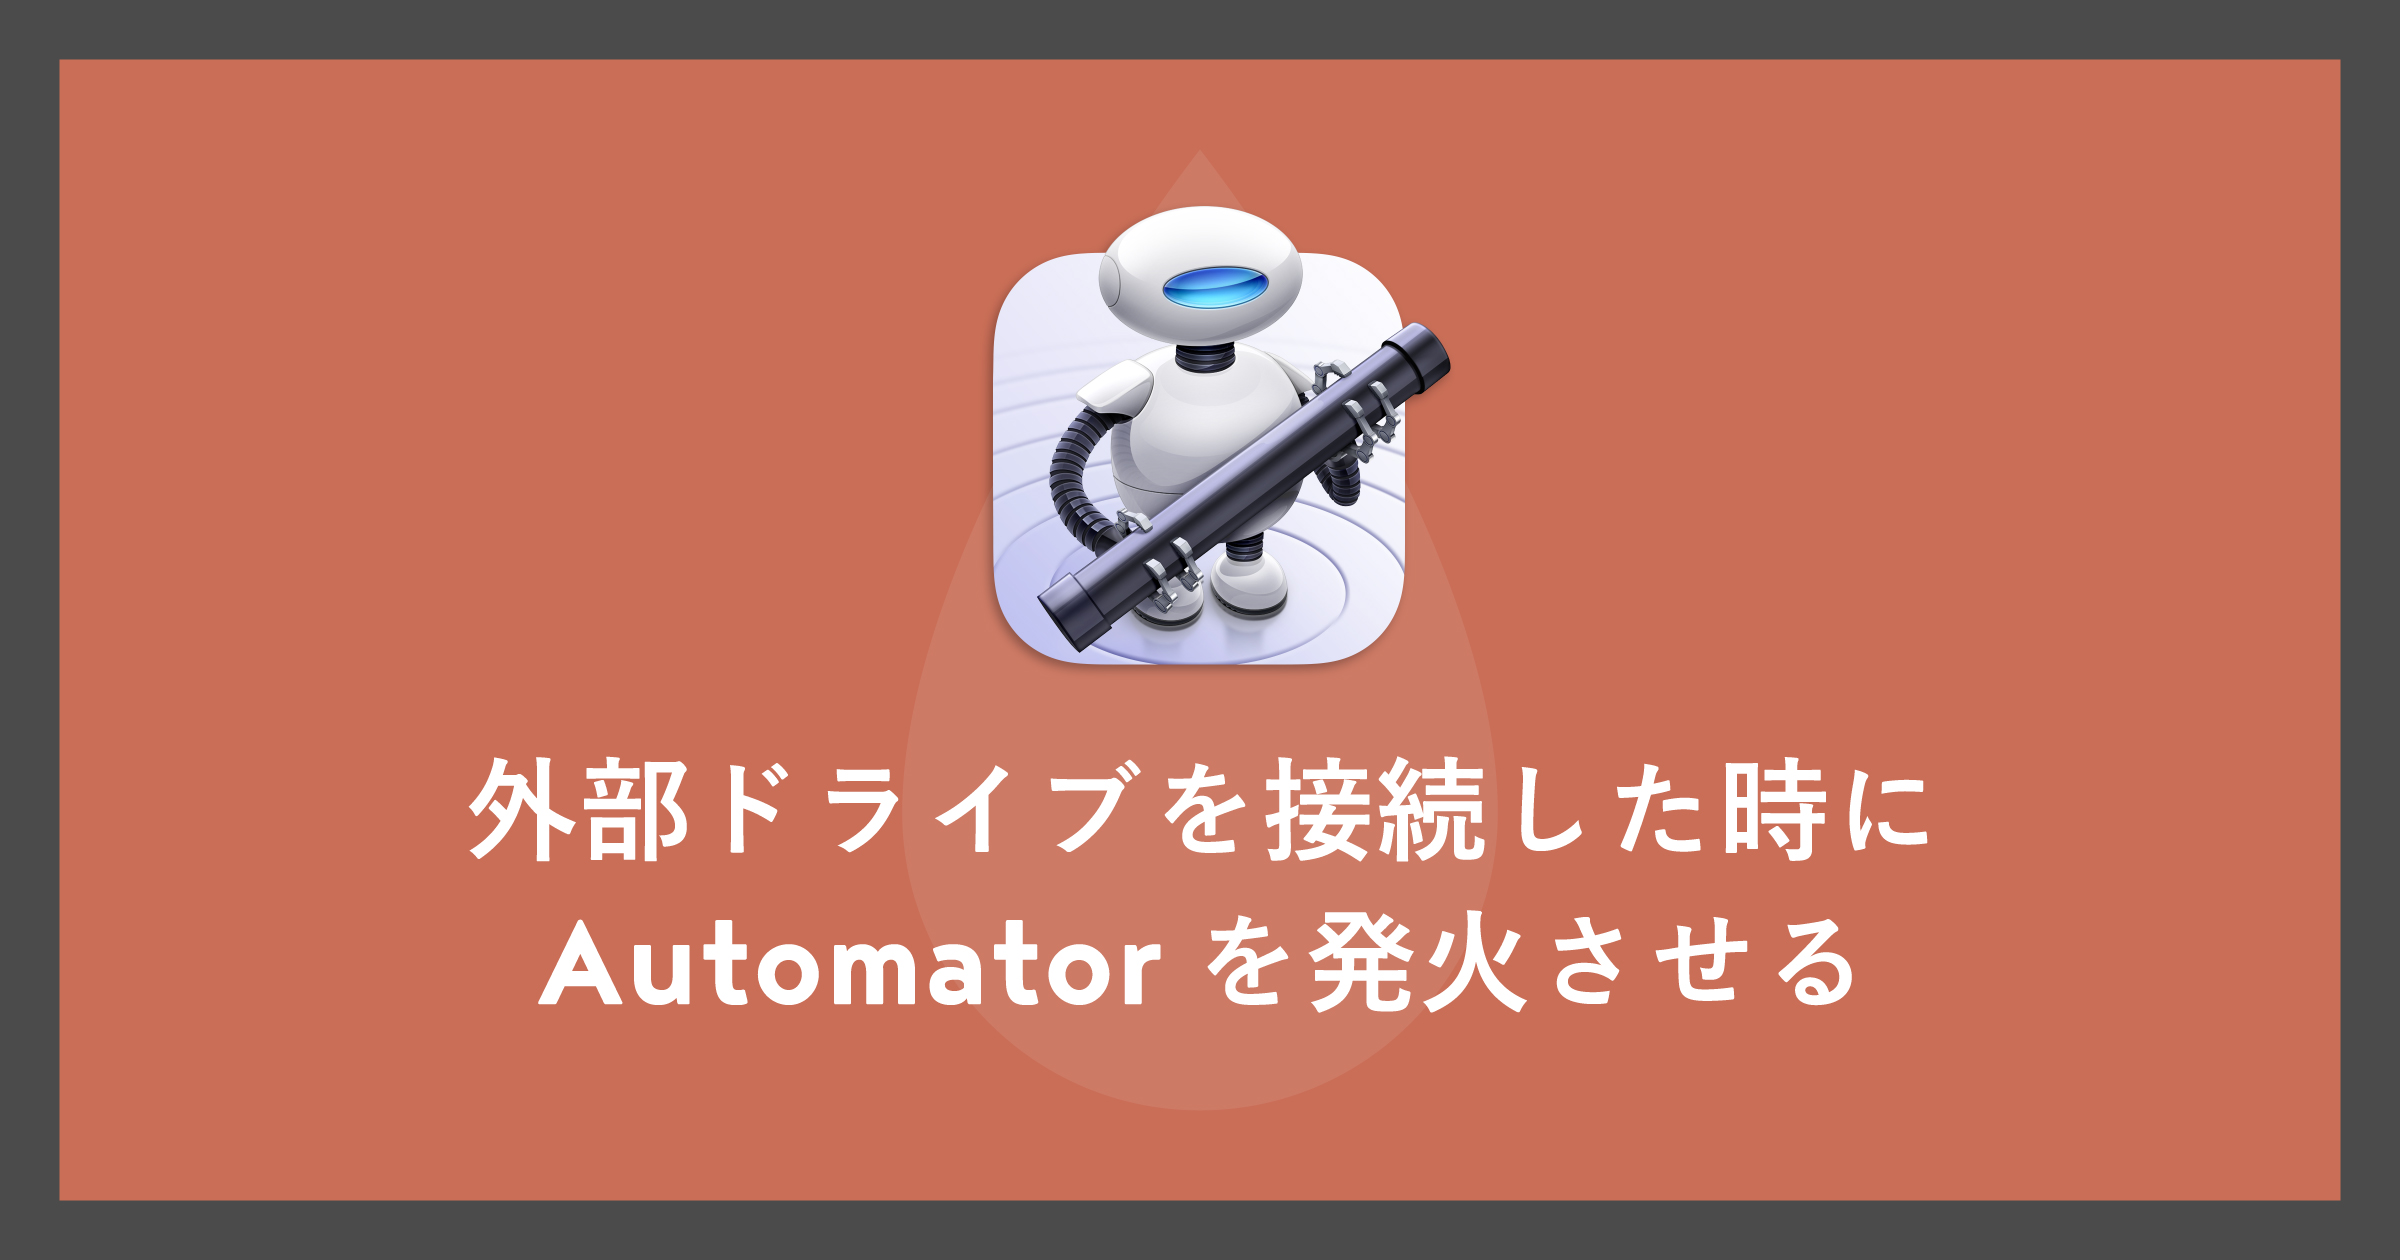 「[Mac/Automator]USBメモリなどの外部ドライブを接続した時に発火させる」のアイキャッチ画像